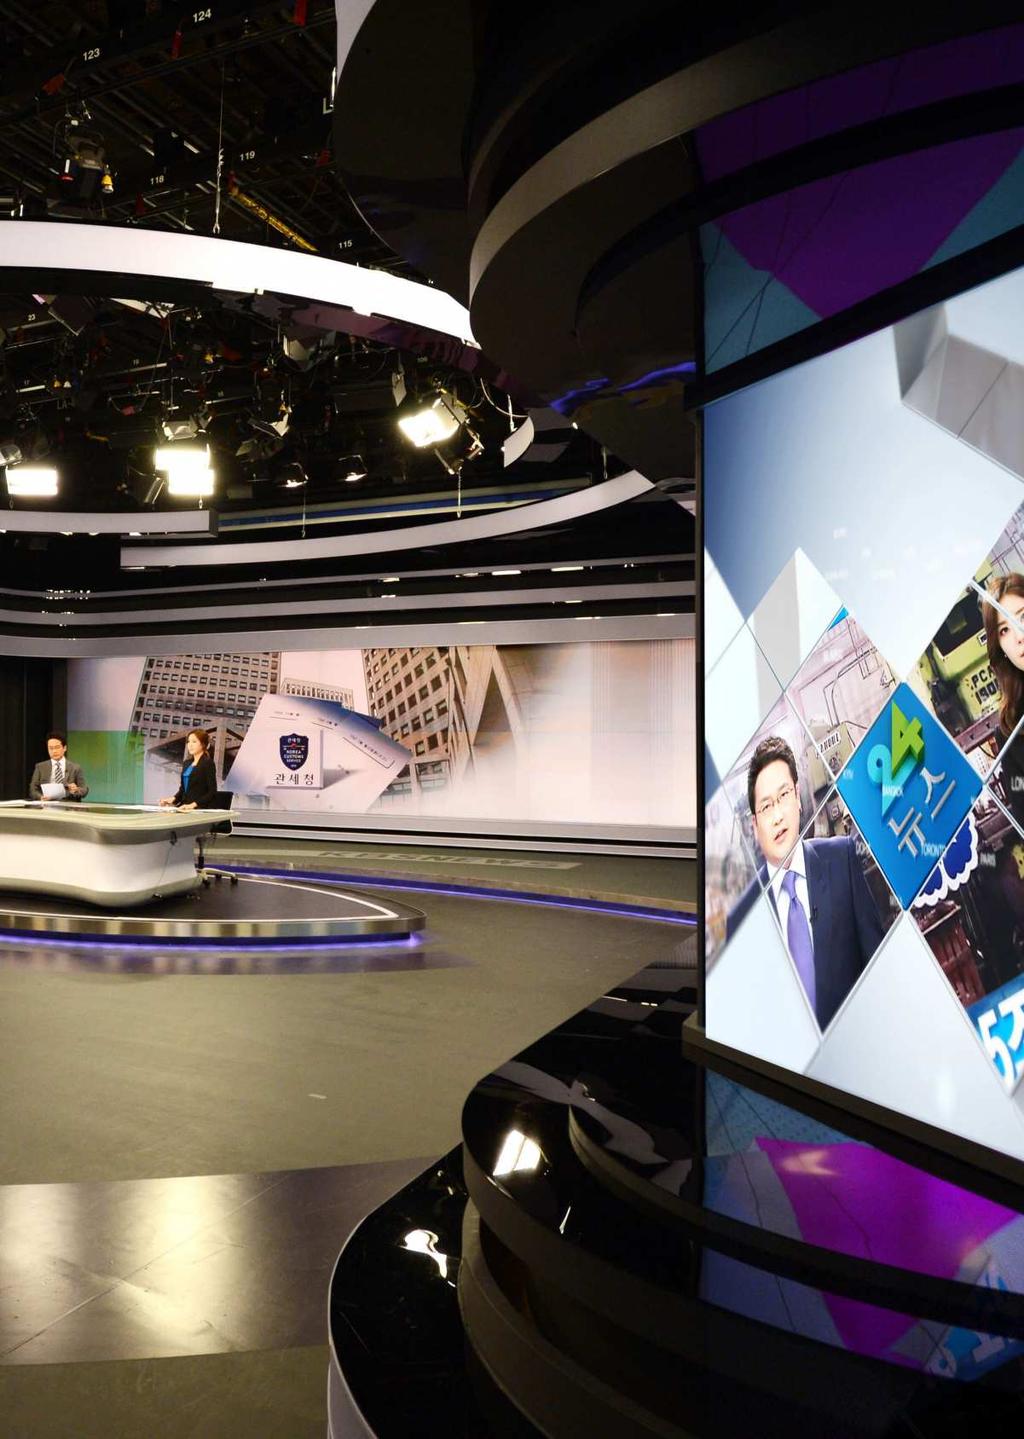 KBS WORLD 24는기존의 KBS1, 2TV에서선별된뉴스및교양 다큐멘터리프로그램들로편성되는고품격시사 정보전문채널로서국내외시청자들에게빠르고정확한정보를전달해드립니다.